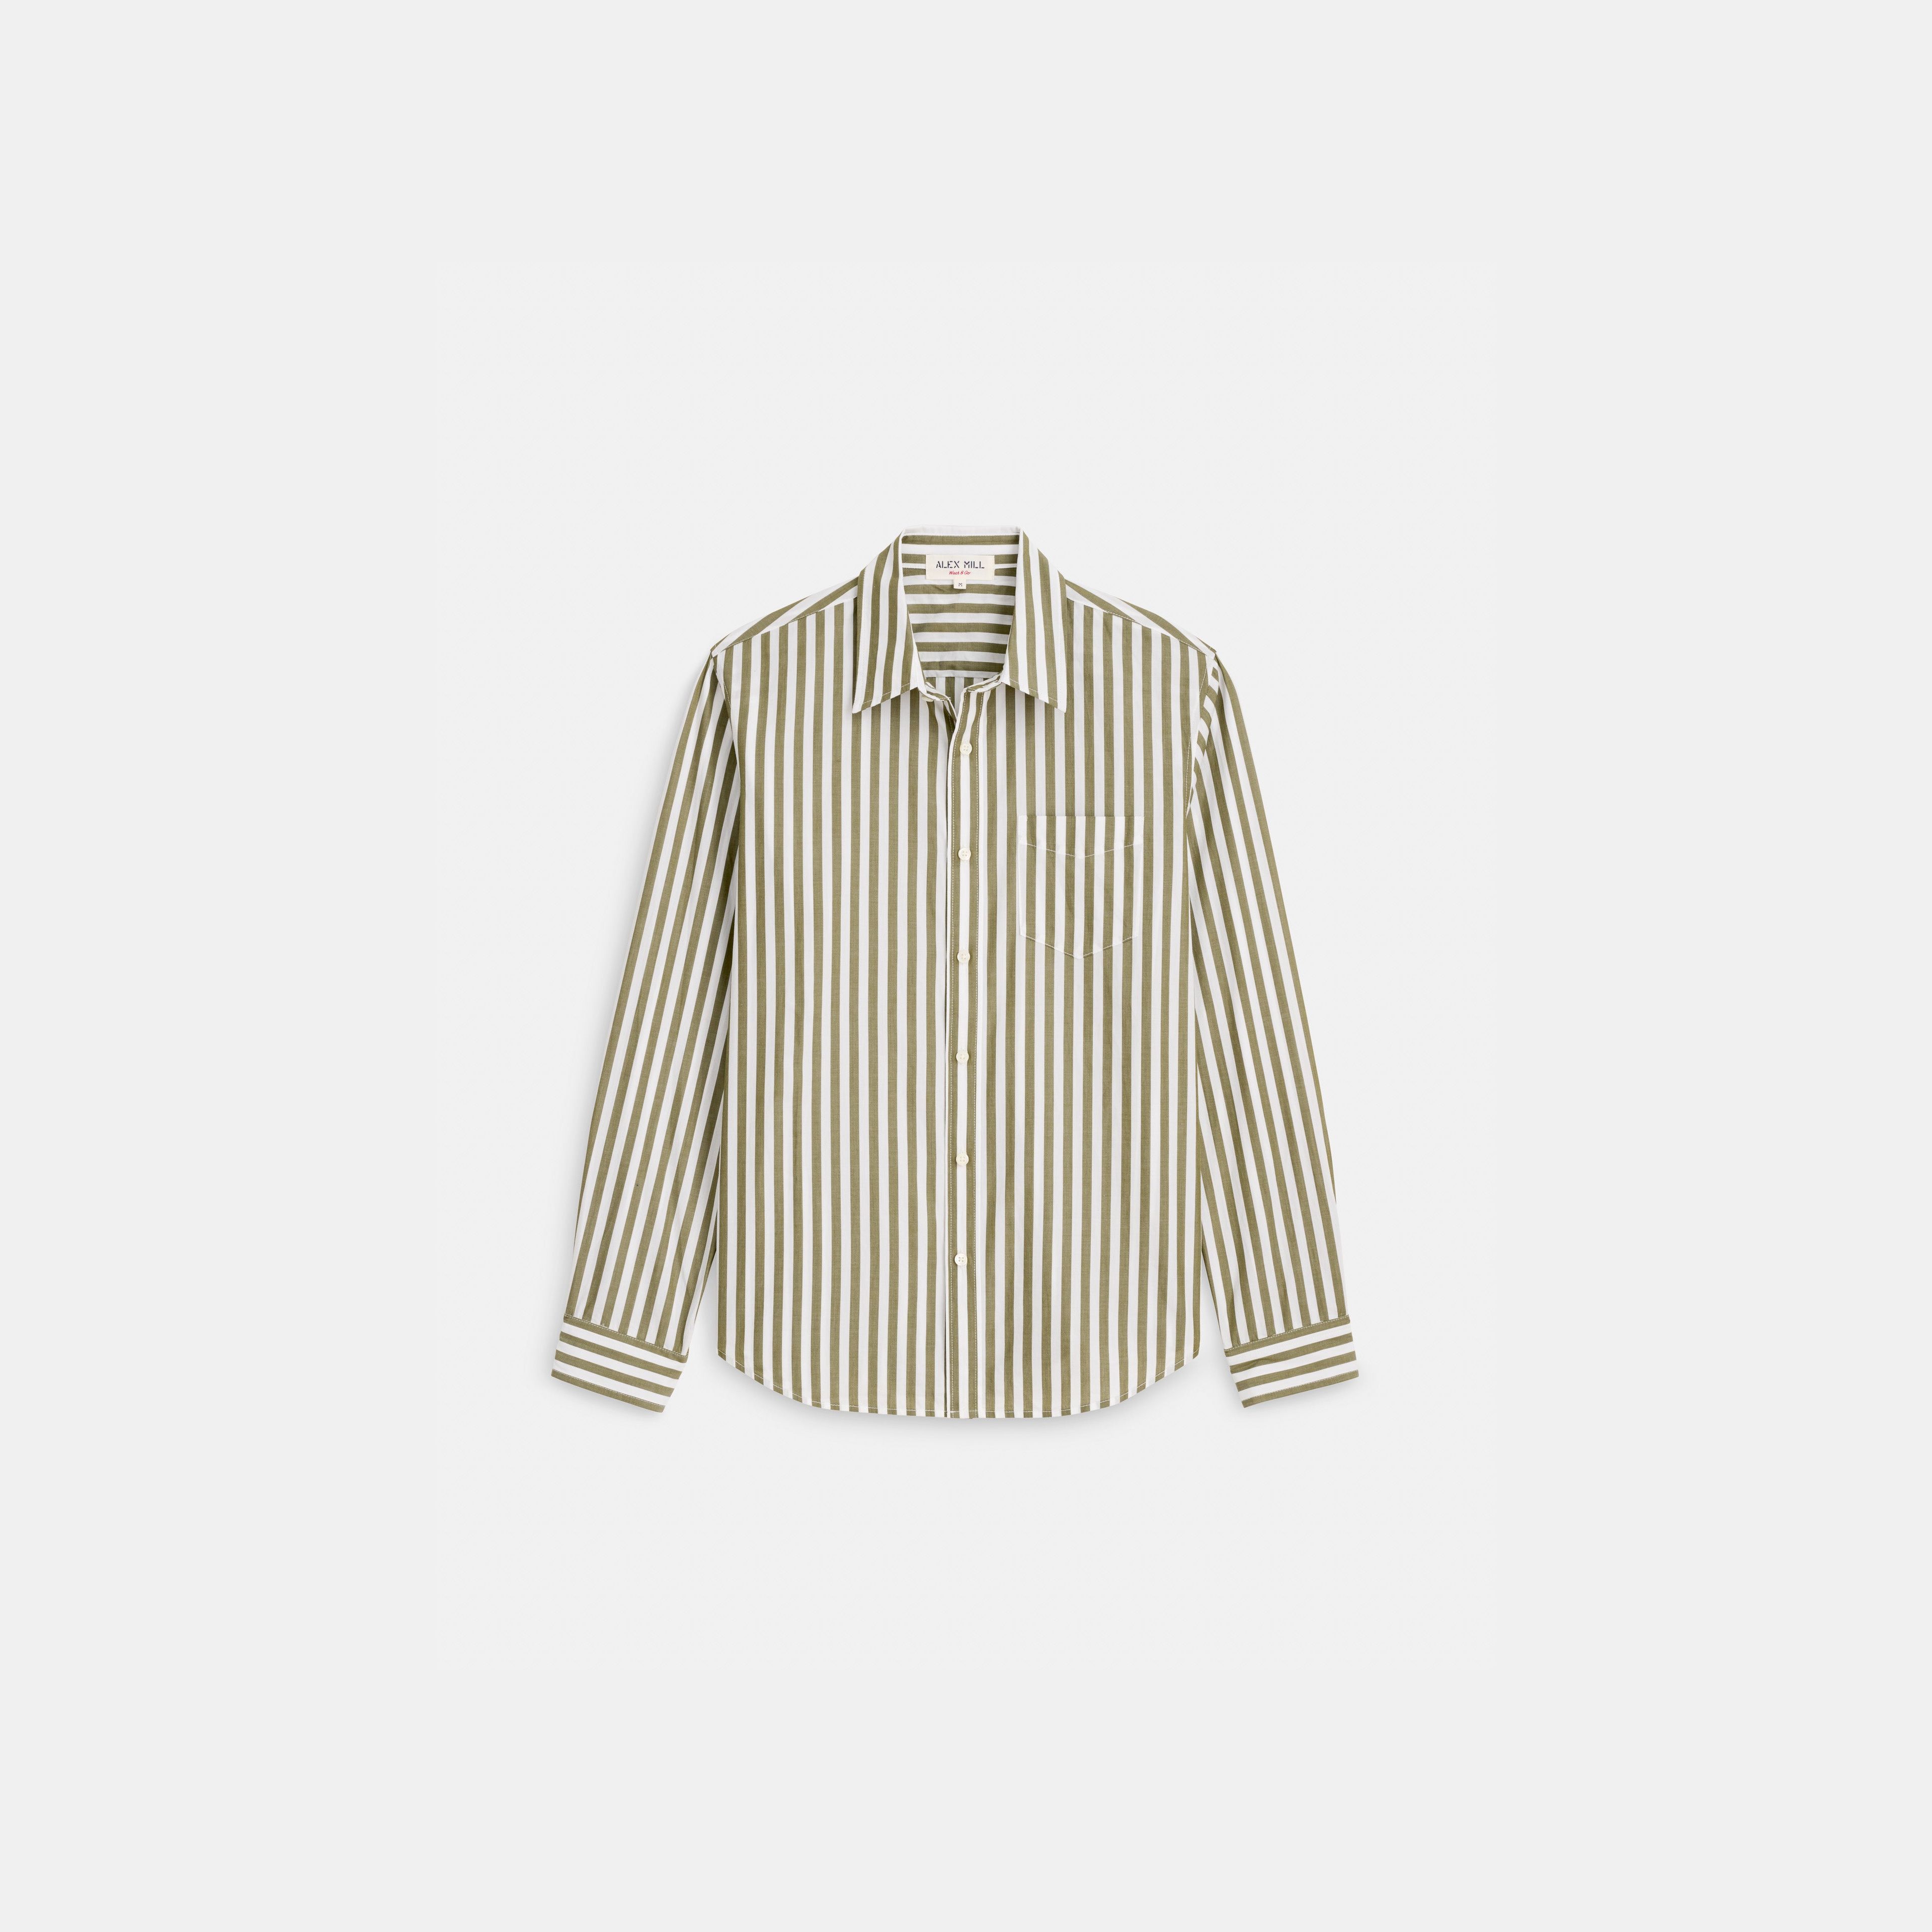 Mill Shirt in Wide Striped Cotton Poplin